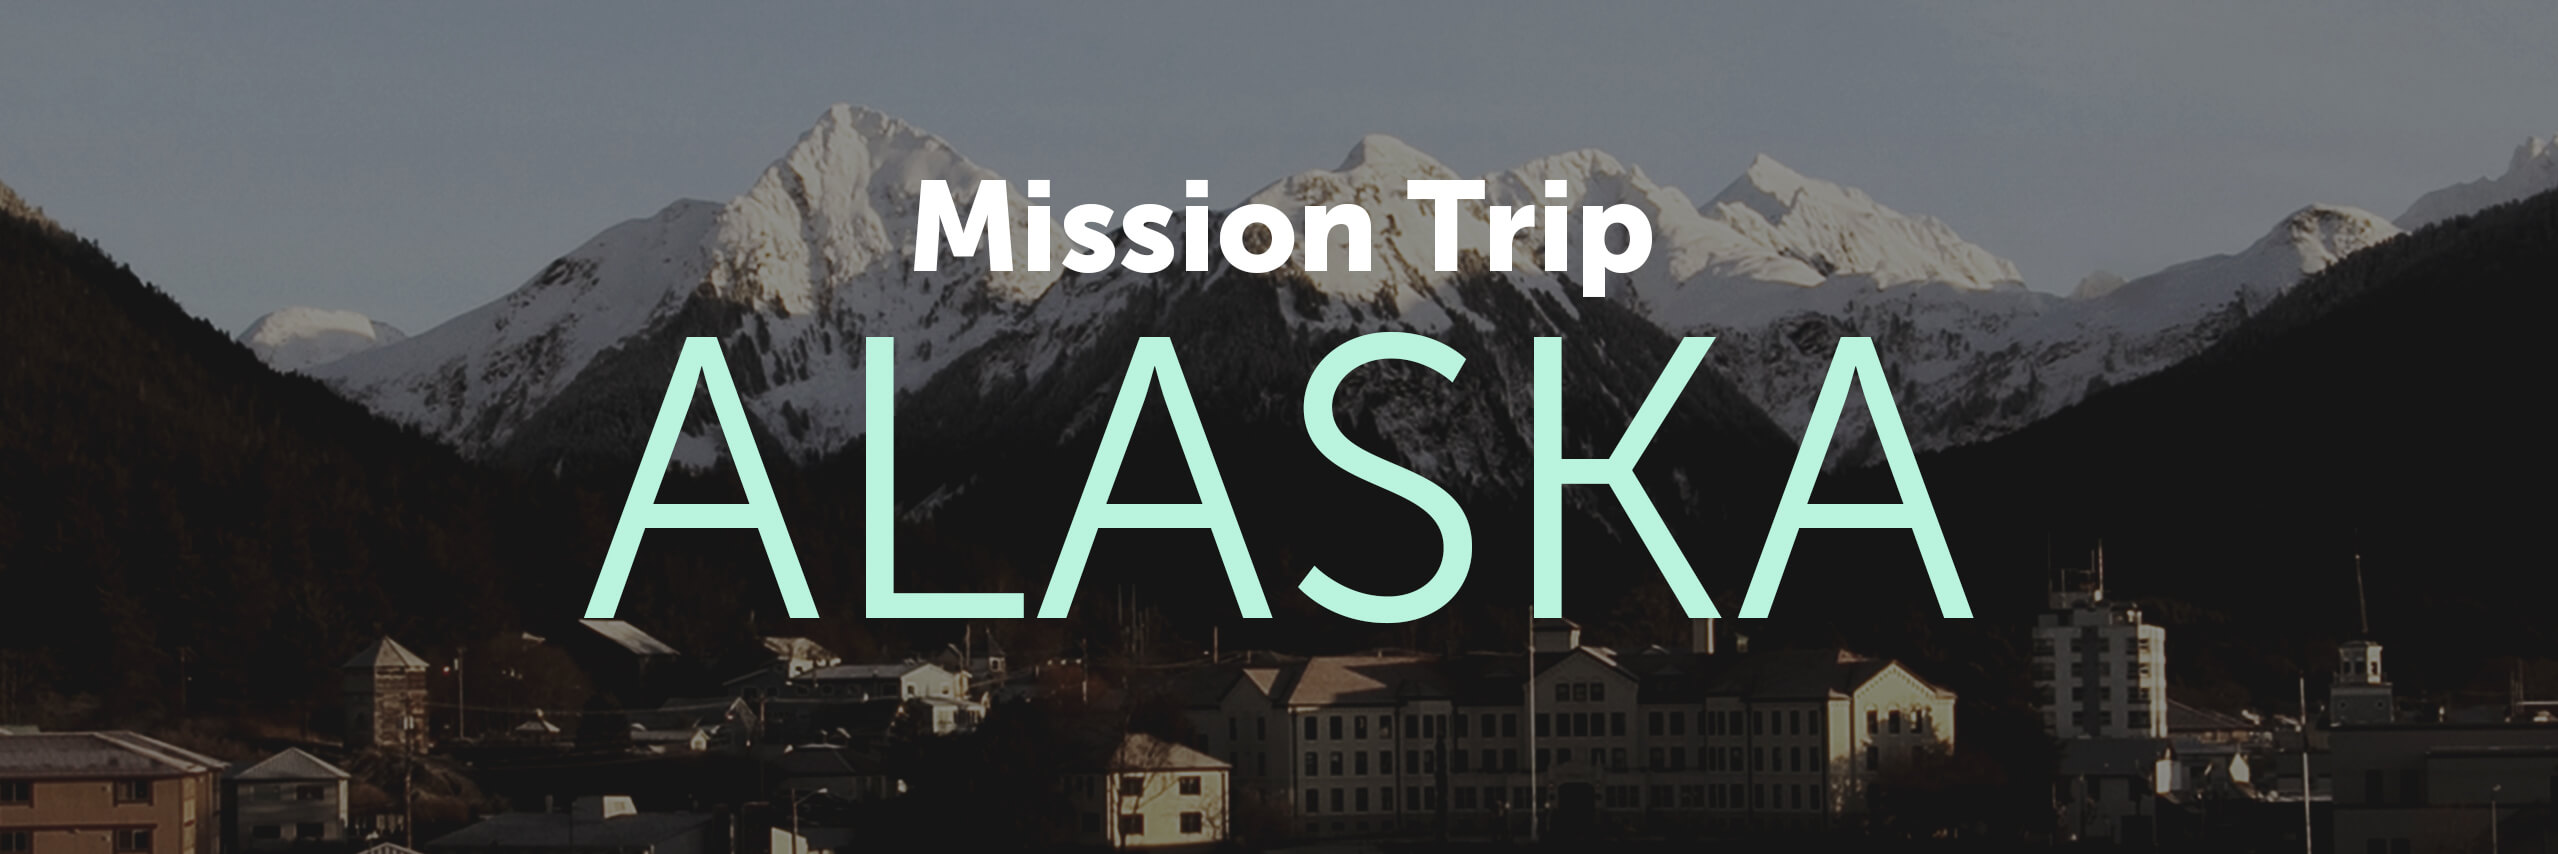 Alaska Mission Trip